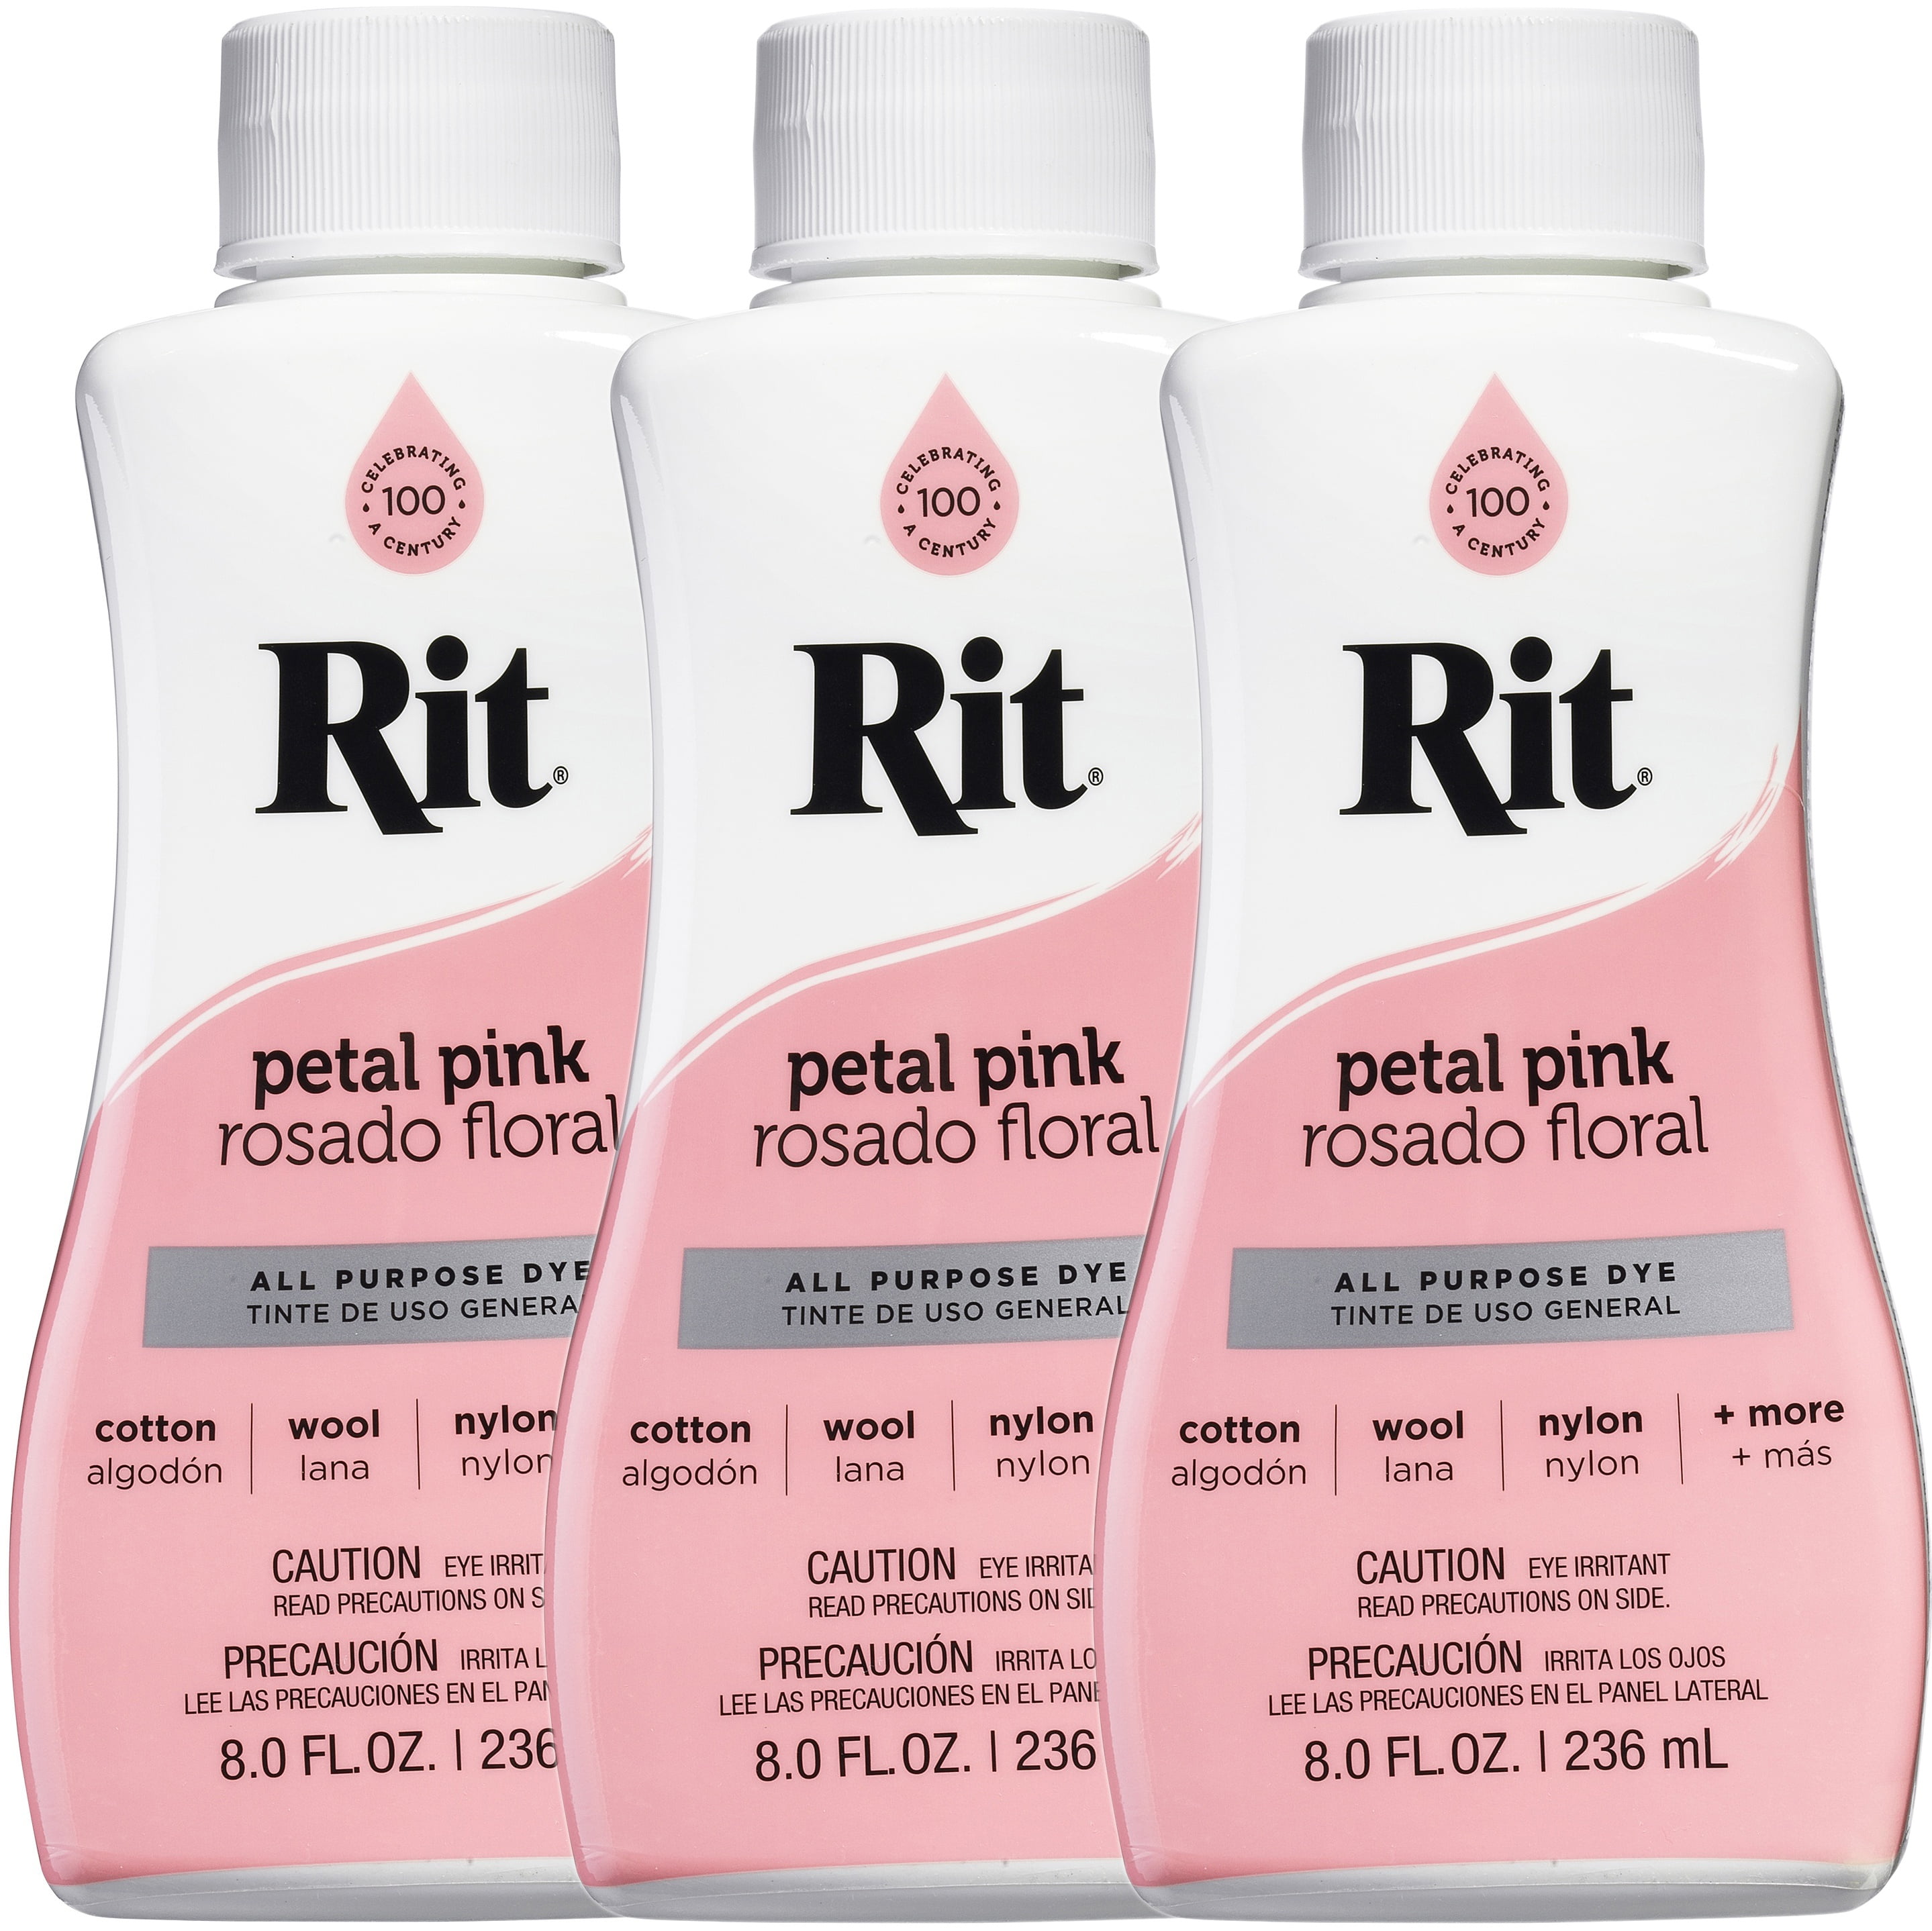 Rit Liquid Dye Petal Pink 3 bottles of same lot - arts & crafts - by owner  - sale - craigslist